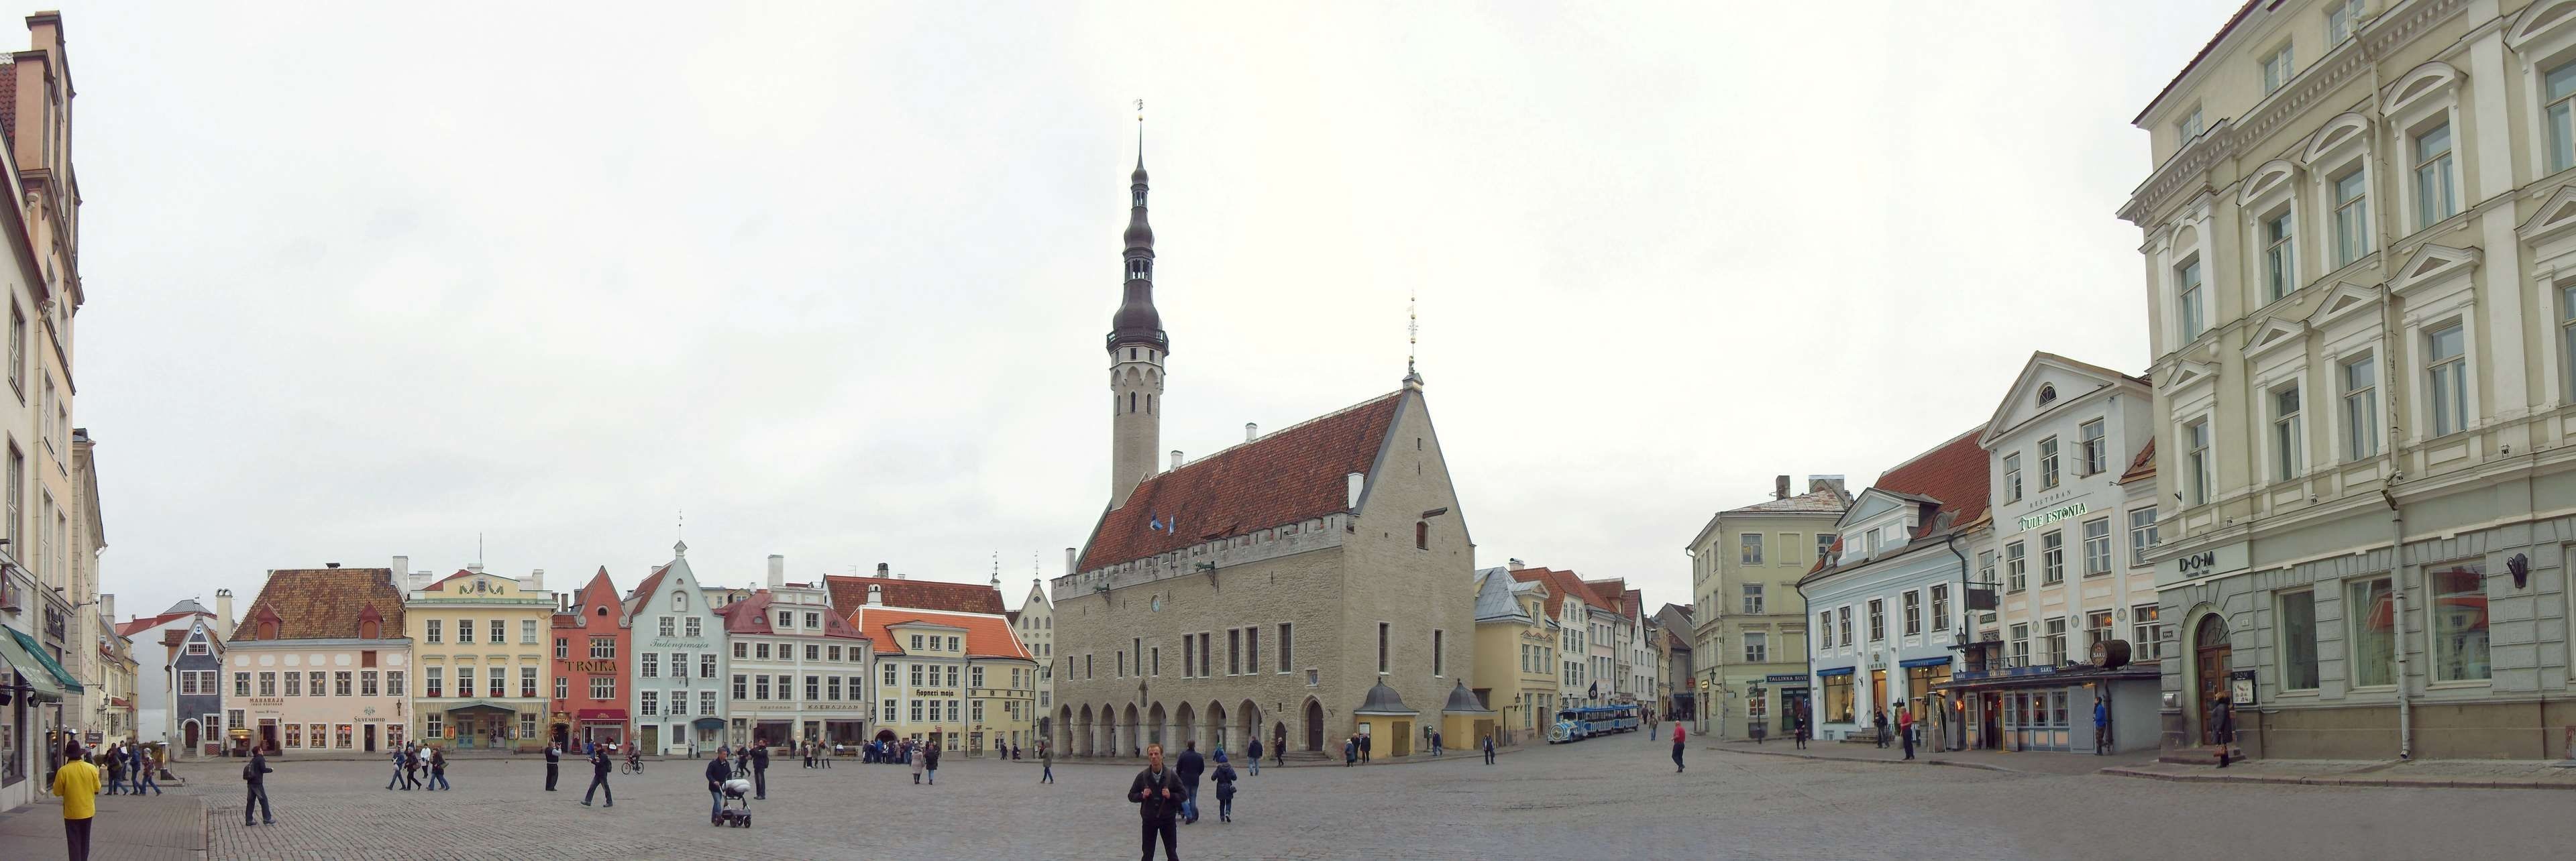 Tallinn Town Hall, Estonian architecture, Raekoja Plats, Tallinn streets, 3840x1290 Dual Screen Desktop